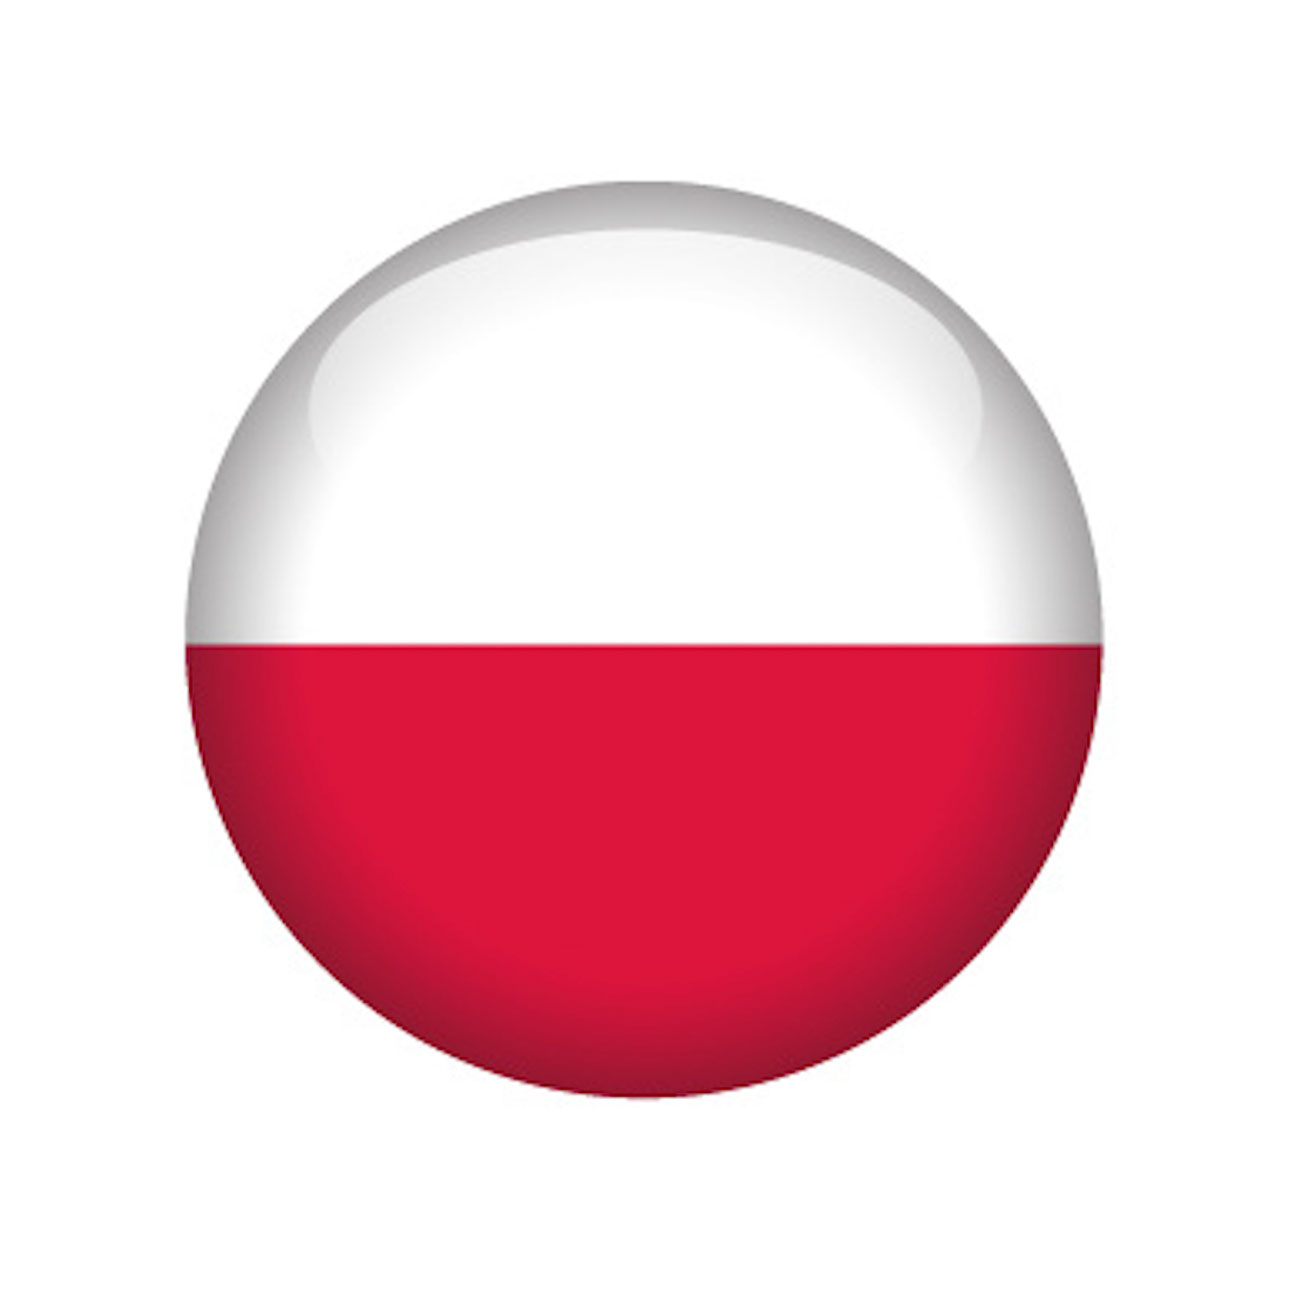 poland country flag round icon